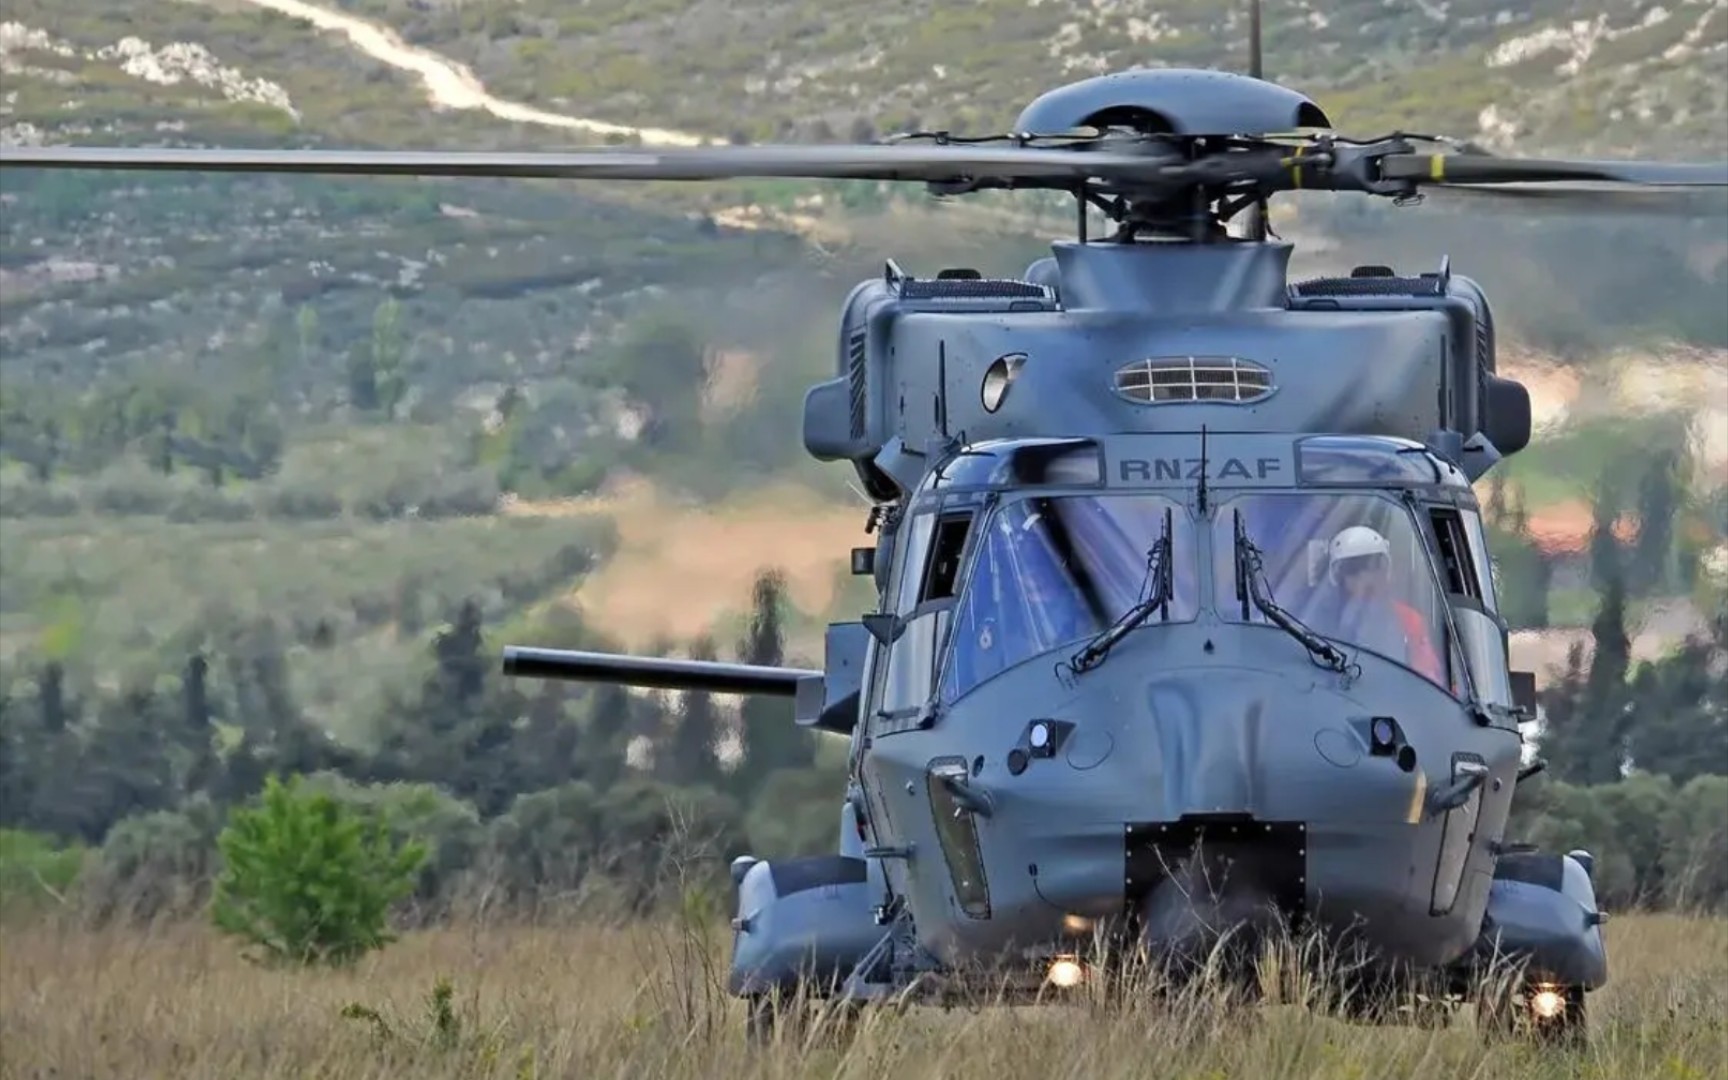 欧洲最大的直升机—nh90,集结欧洲5国技术,性能领先不逊于黑鹰!